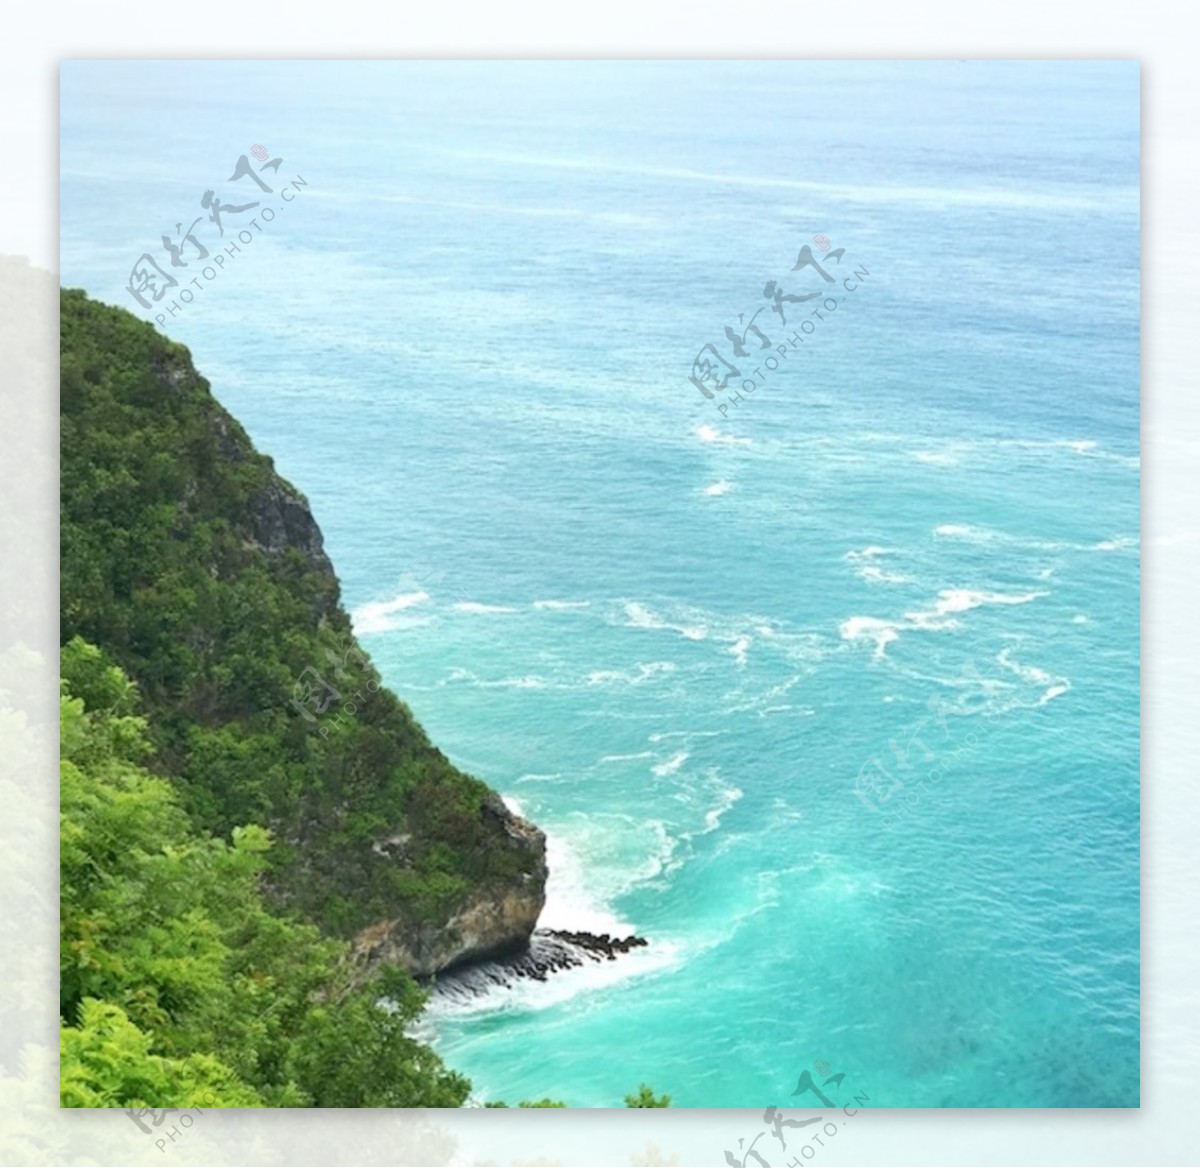 巴厘岛海边悬崖